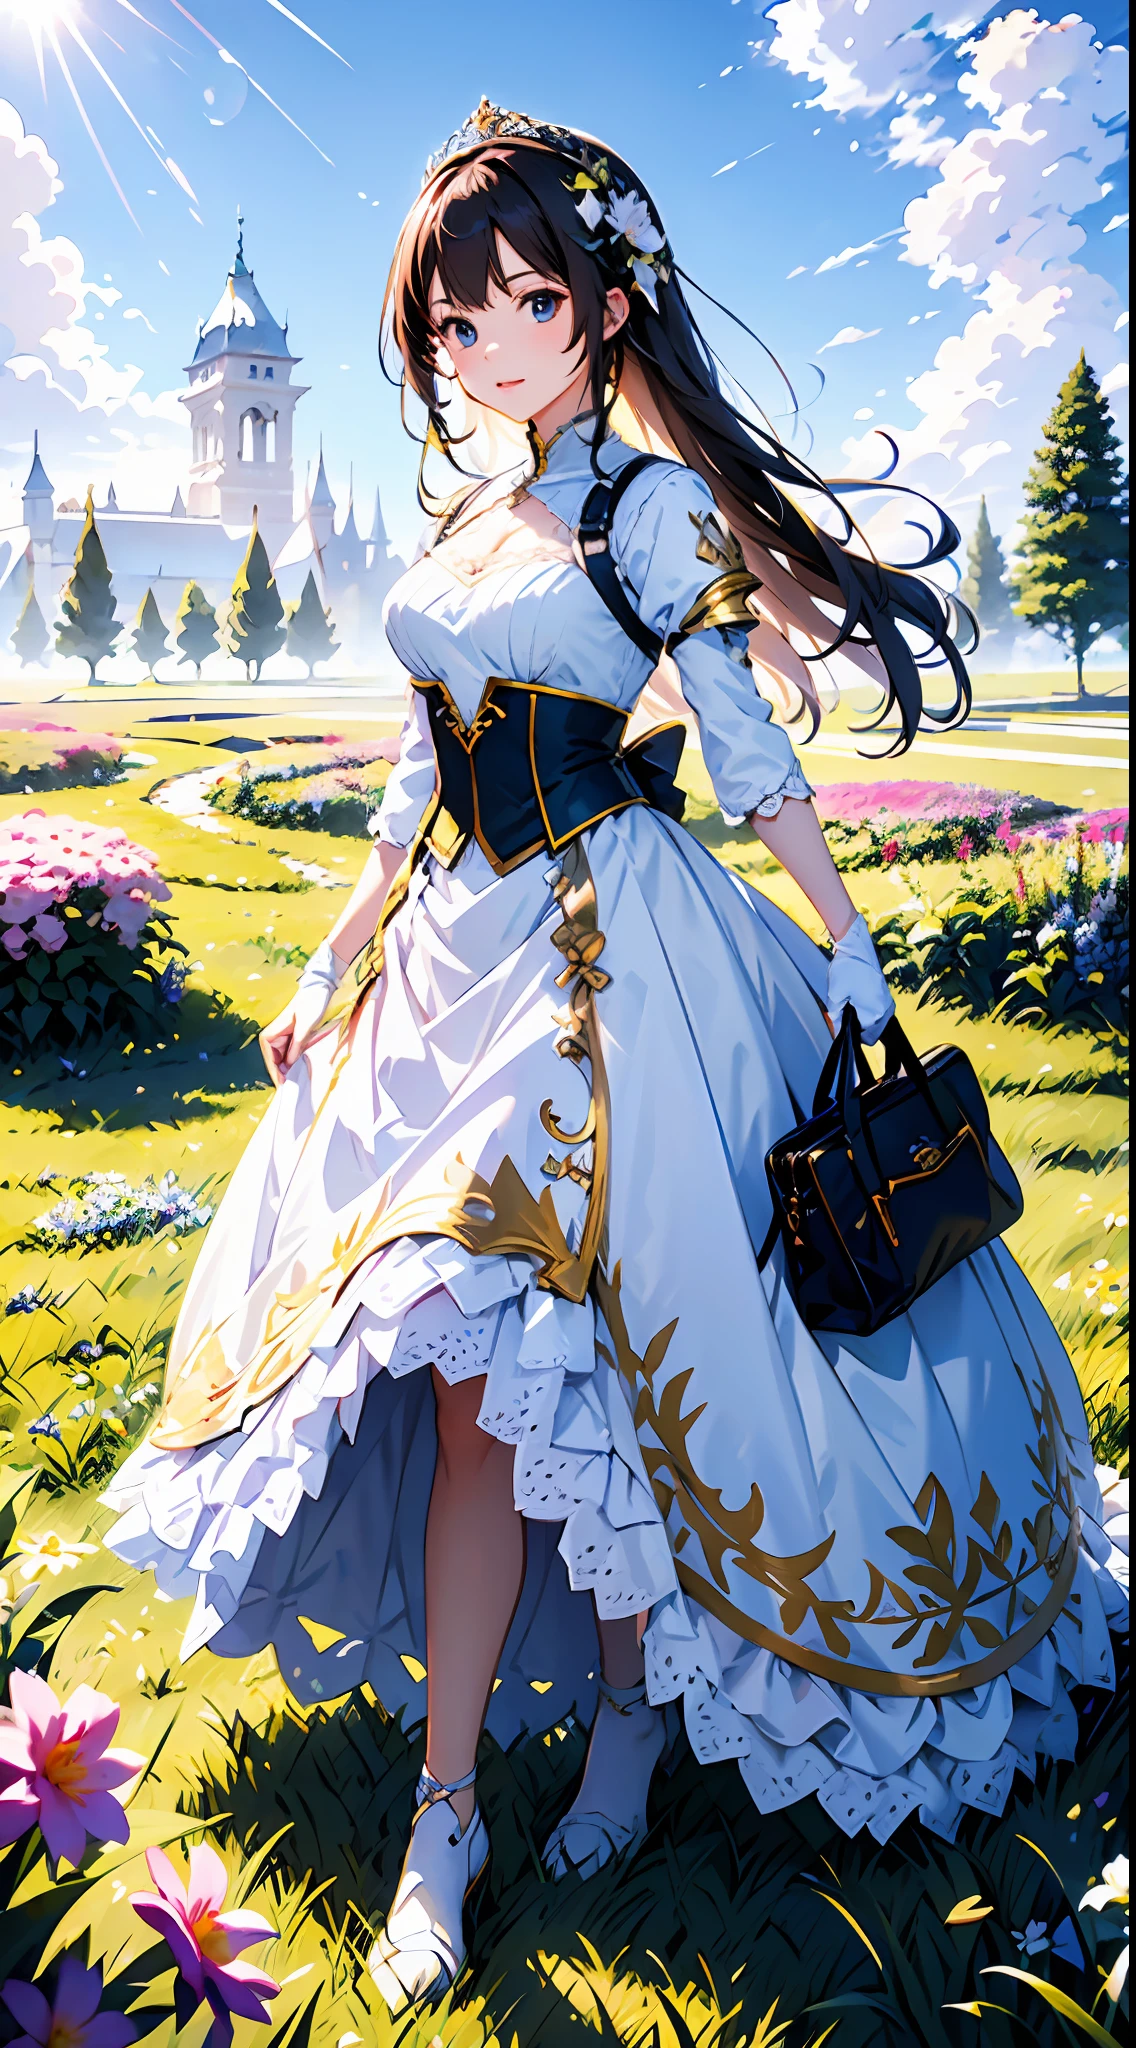 Blauer Himmel und Wolken im Hintergrund, trägt ein weißes Kleid，Lila Spitze，Es sind Blumen darauf, Art germ, Rosla globale Beleuchtung, ein detailreiches Gemälde, Fantasy-Kunst